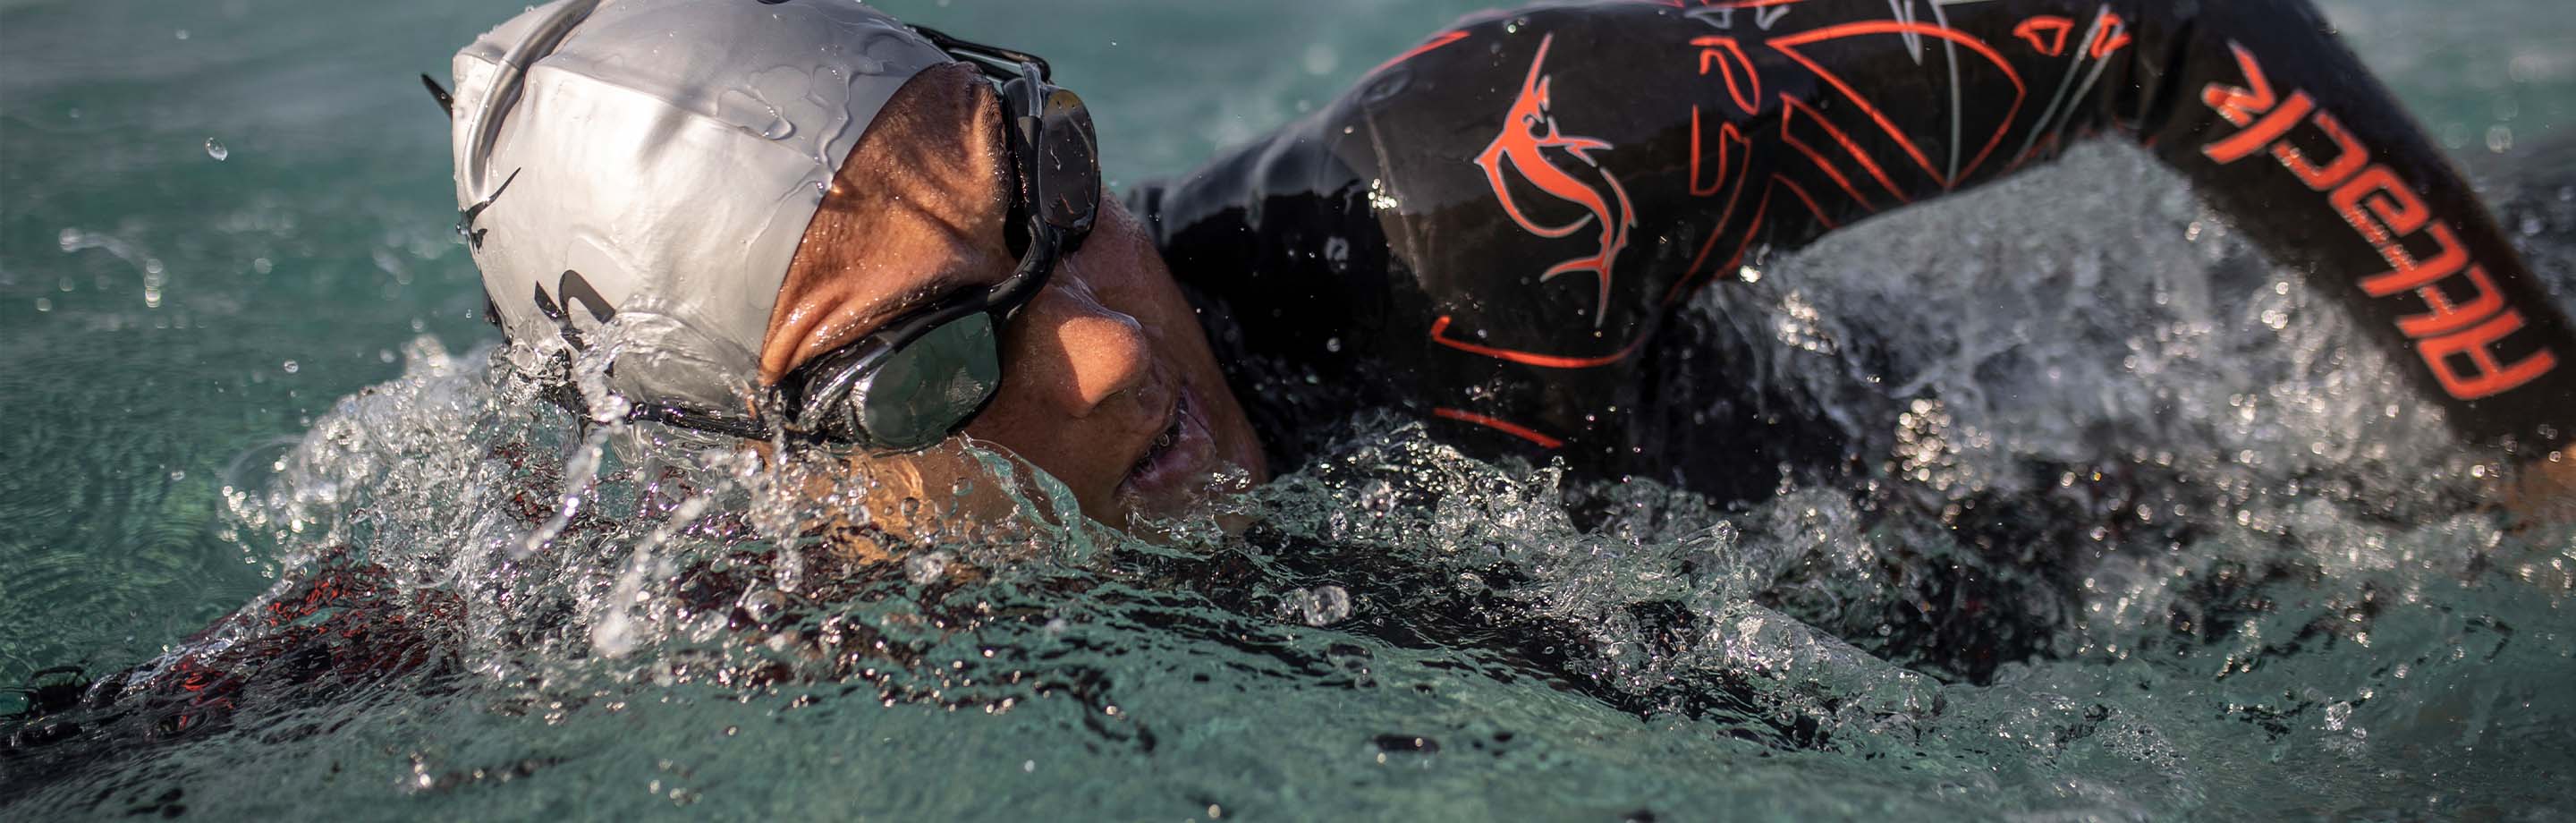 sailfish – Mute, pelli da nuoto, trisuite e accessori – made to make you faster